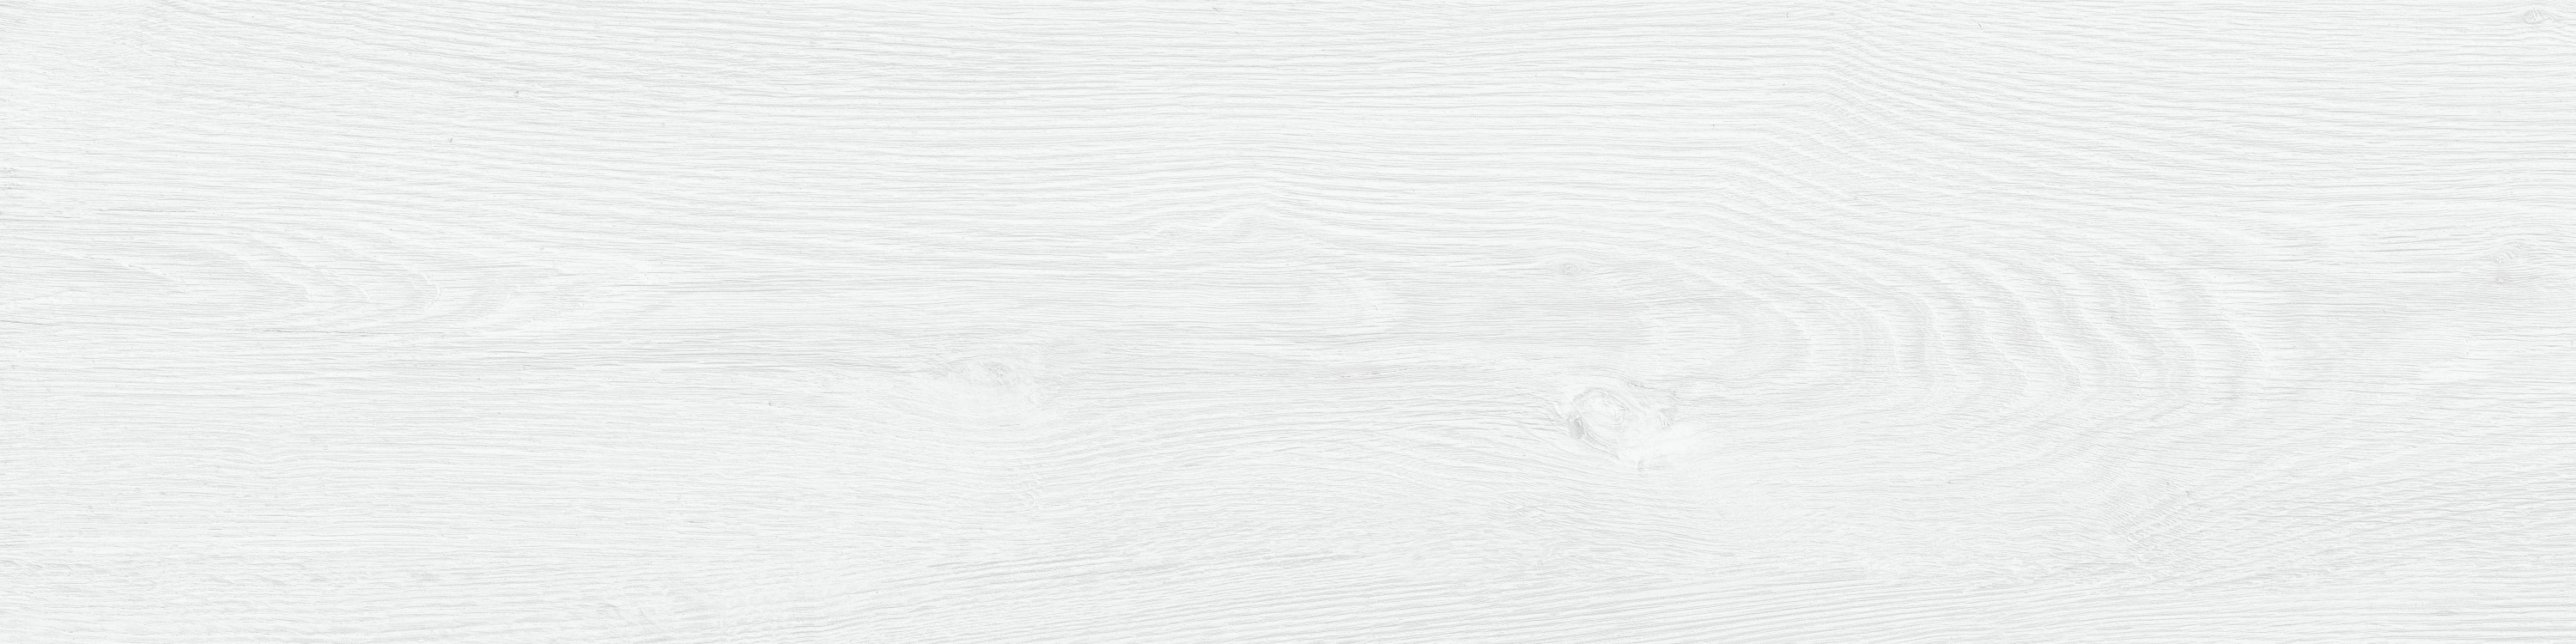 Керамогранит Vitra SoftWood Светло-серый Мат R10A 7Р 20x80 керамогранит vitra marbleset иллюжн темно серый матовый r97 рек k951302lpr01vte0 60x60